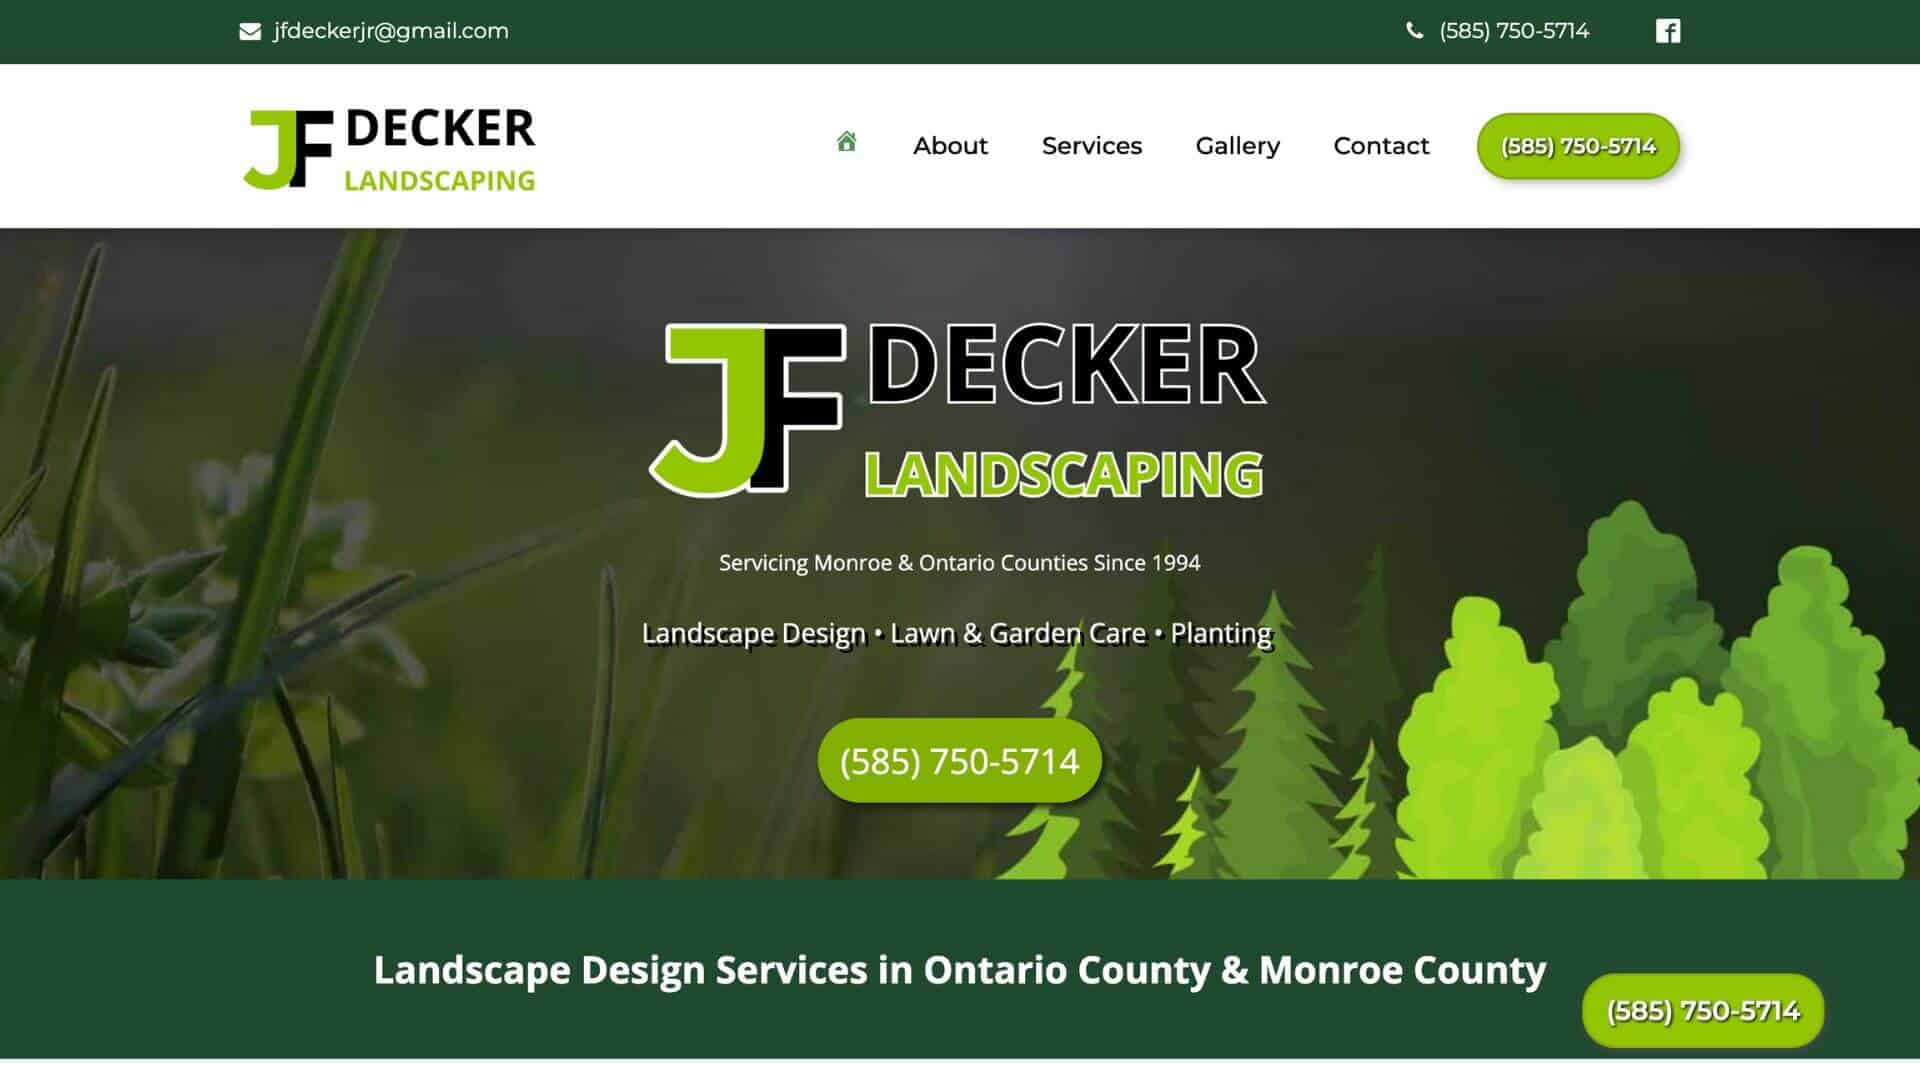 JF Decker Landscaping